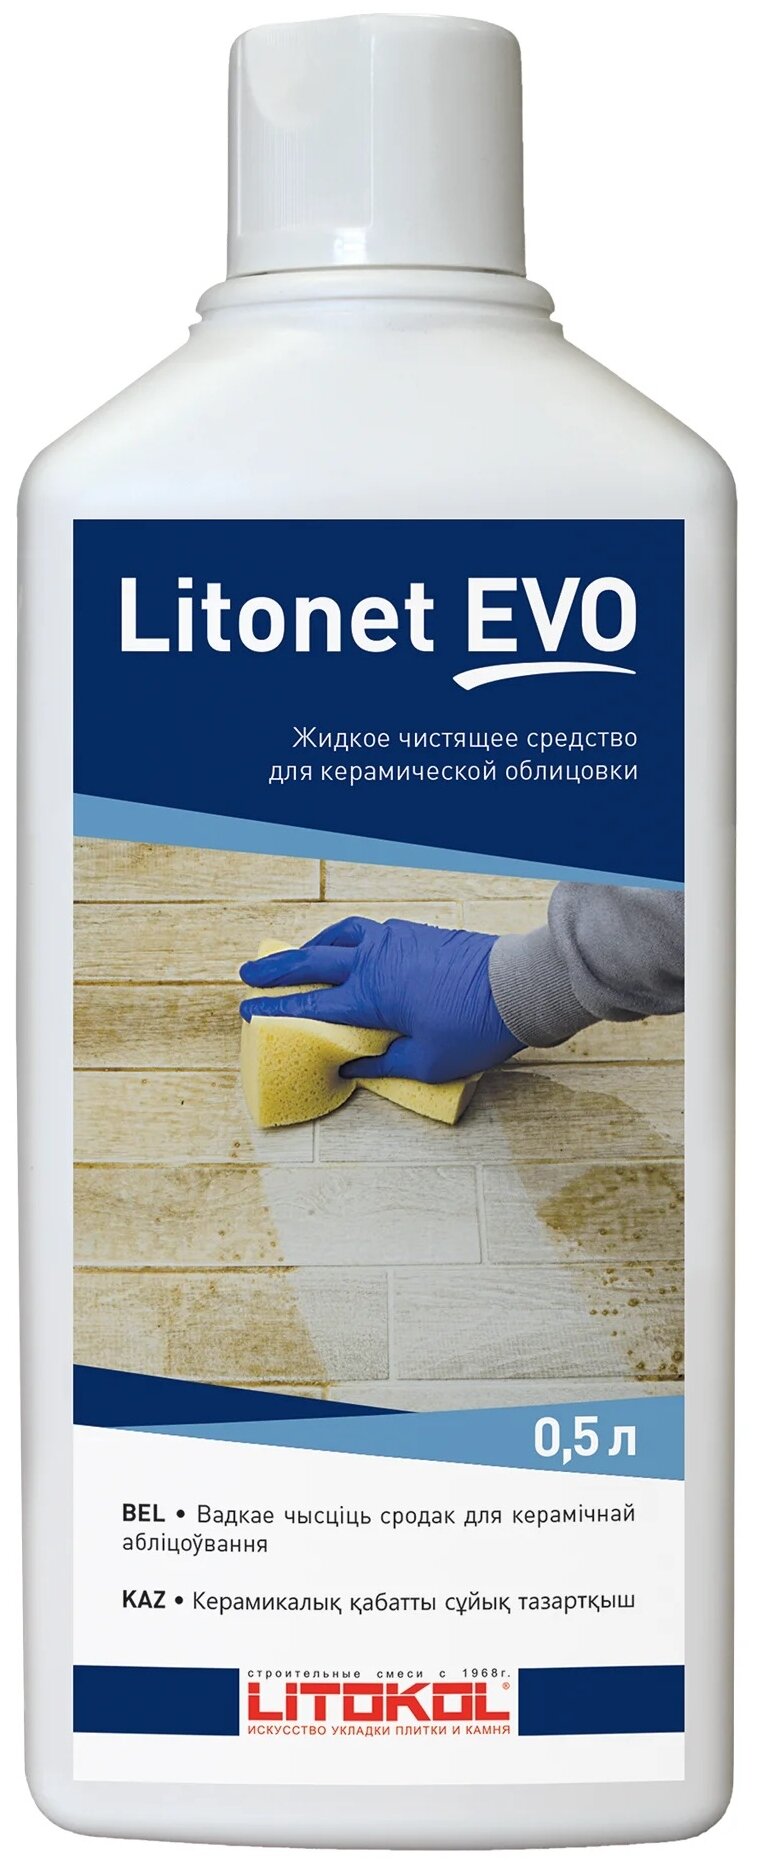 Очиститель Litokol жидкий для облицовочной поверхности Litonet EVO